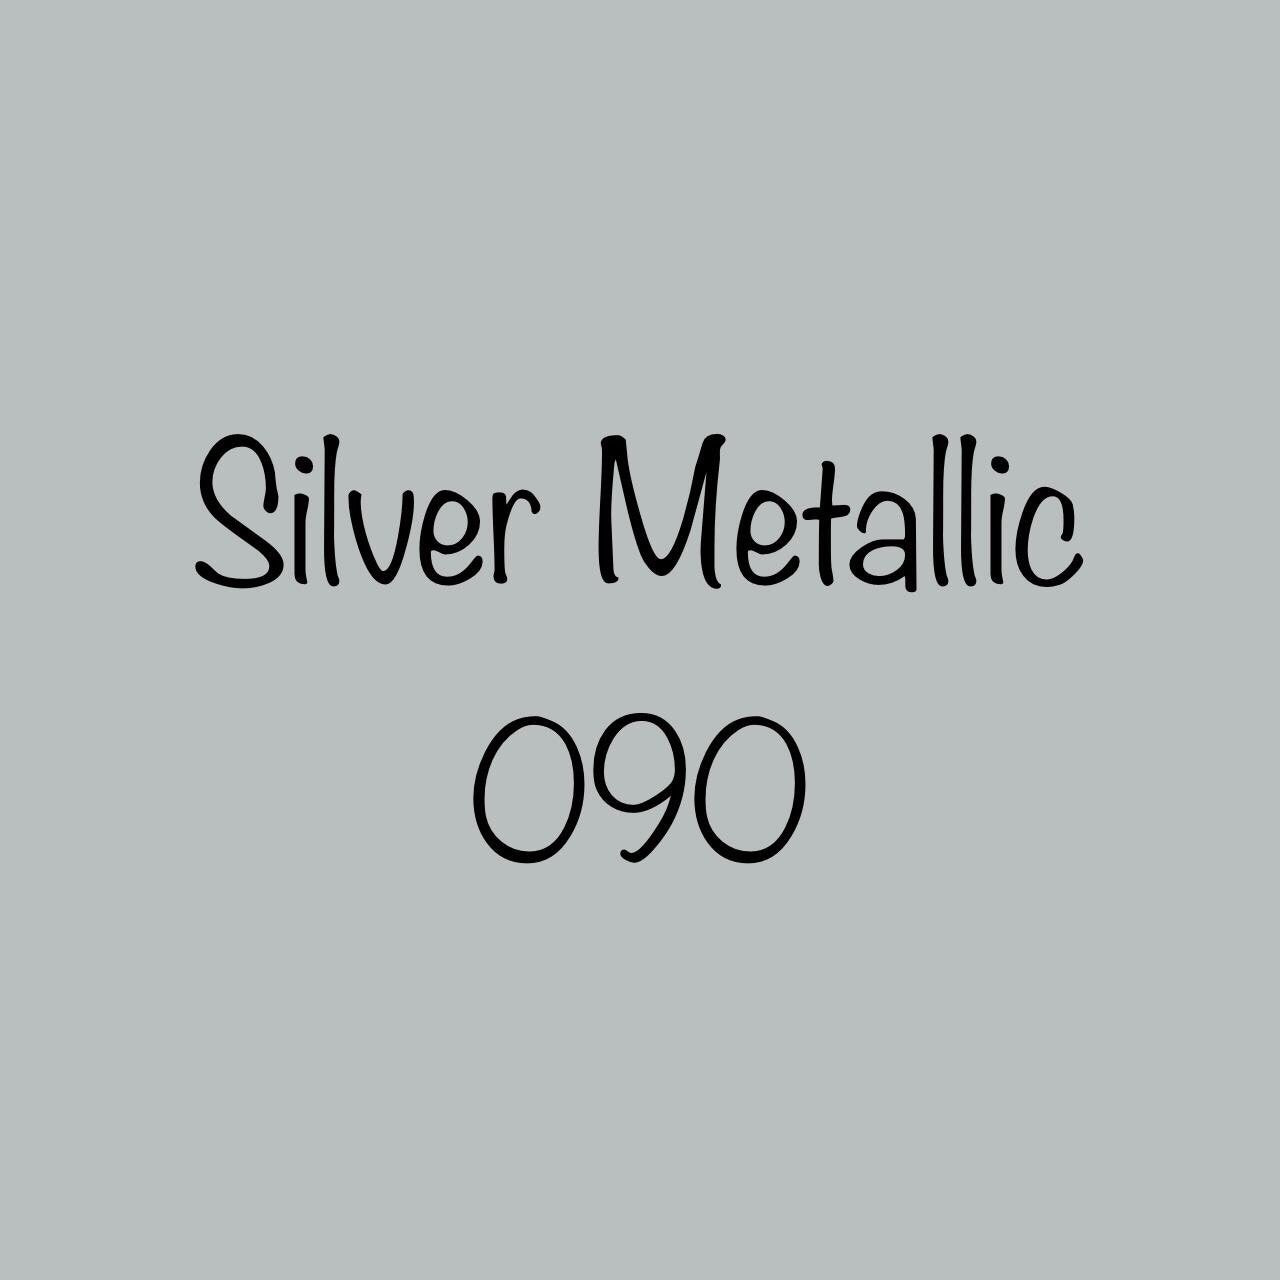 Oracal 631 Removable Vinyl Silver Grey Metallic (090)